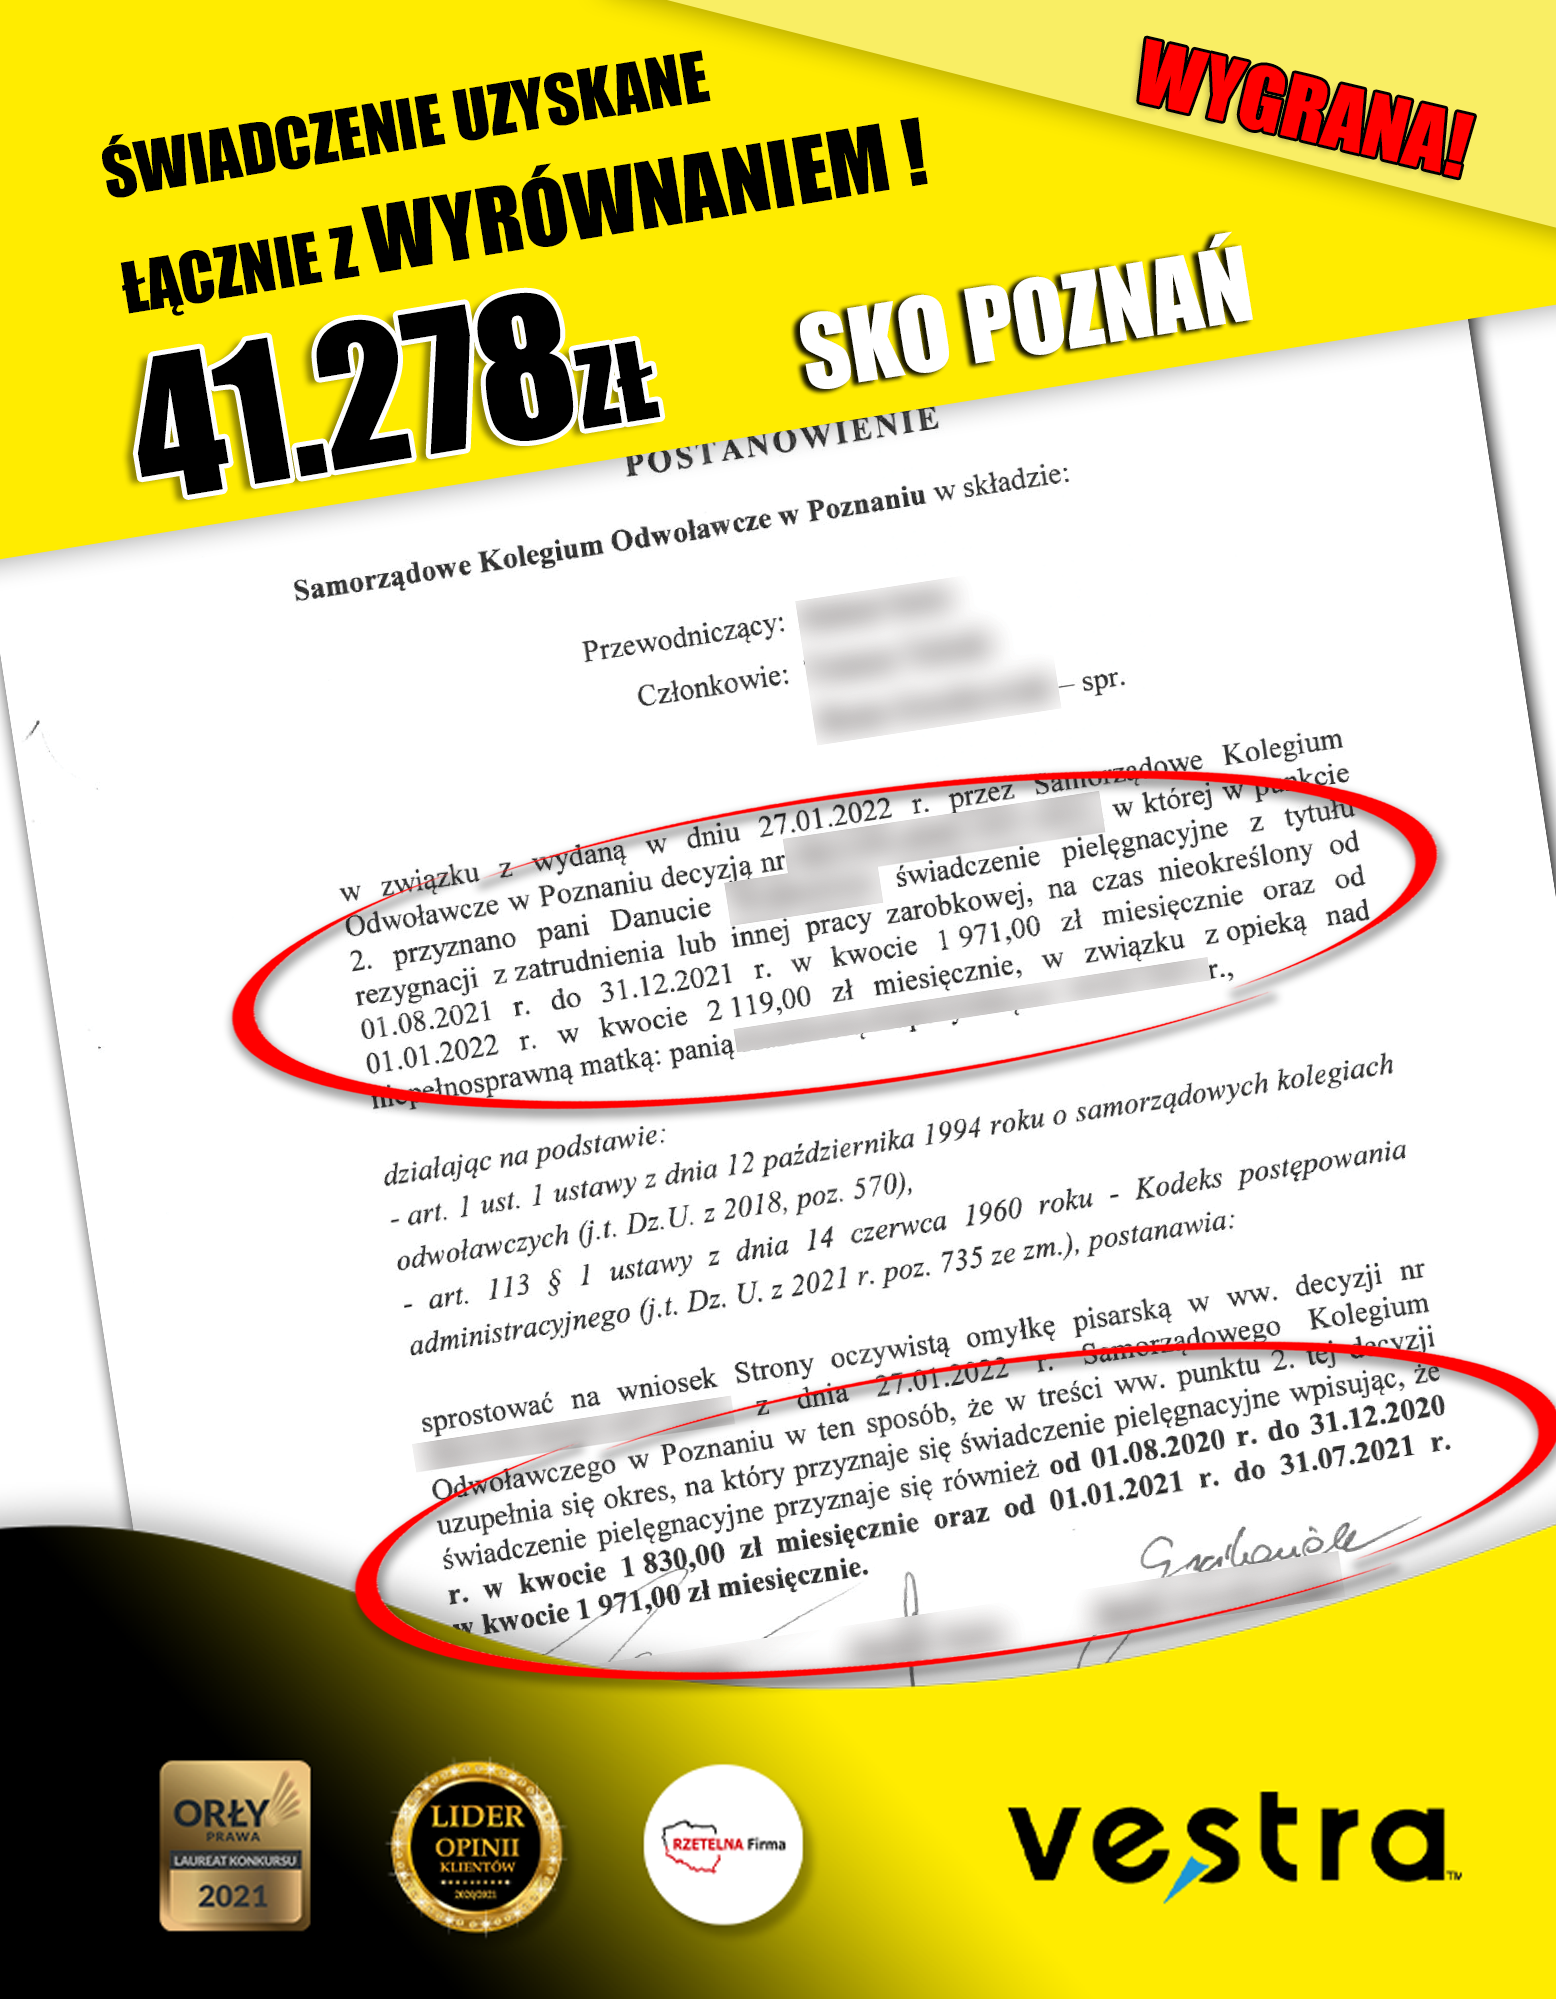 SKO Poznań 41.278zł